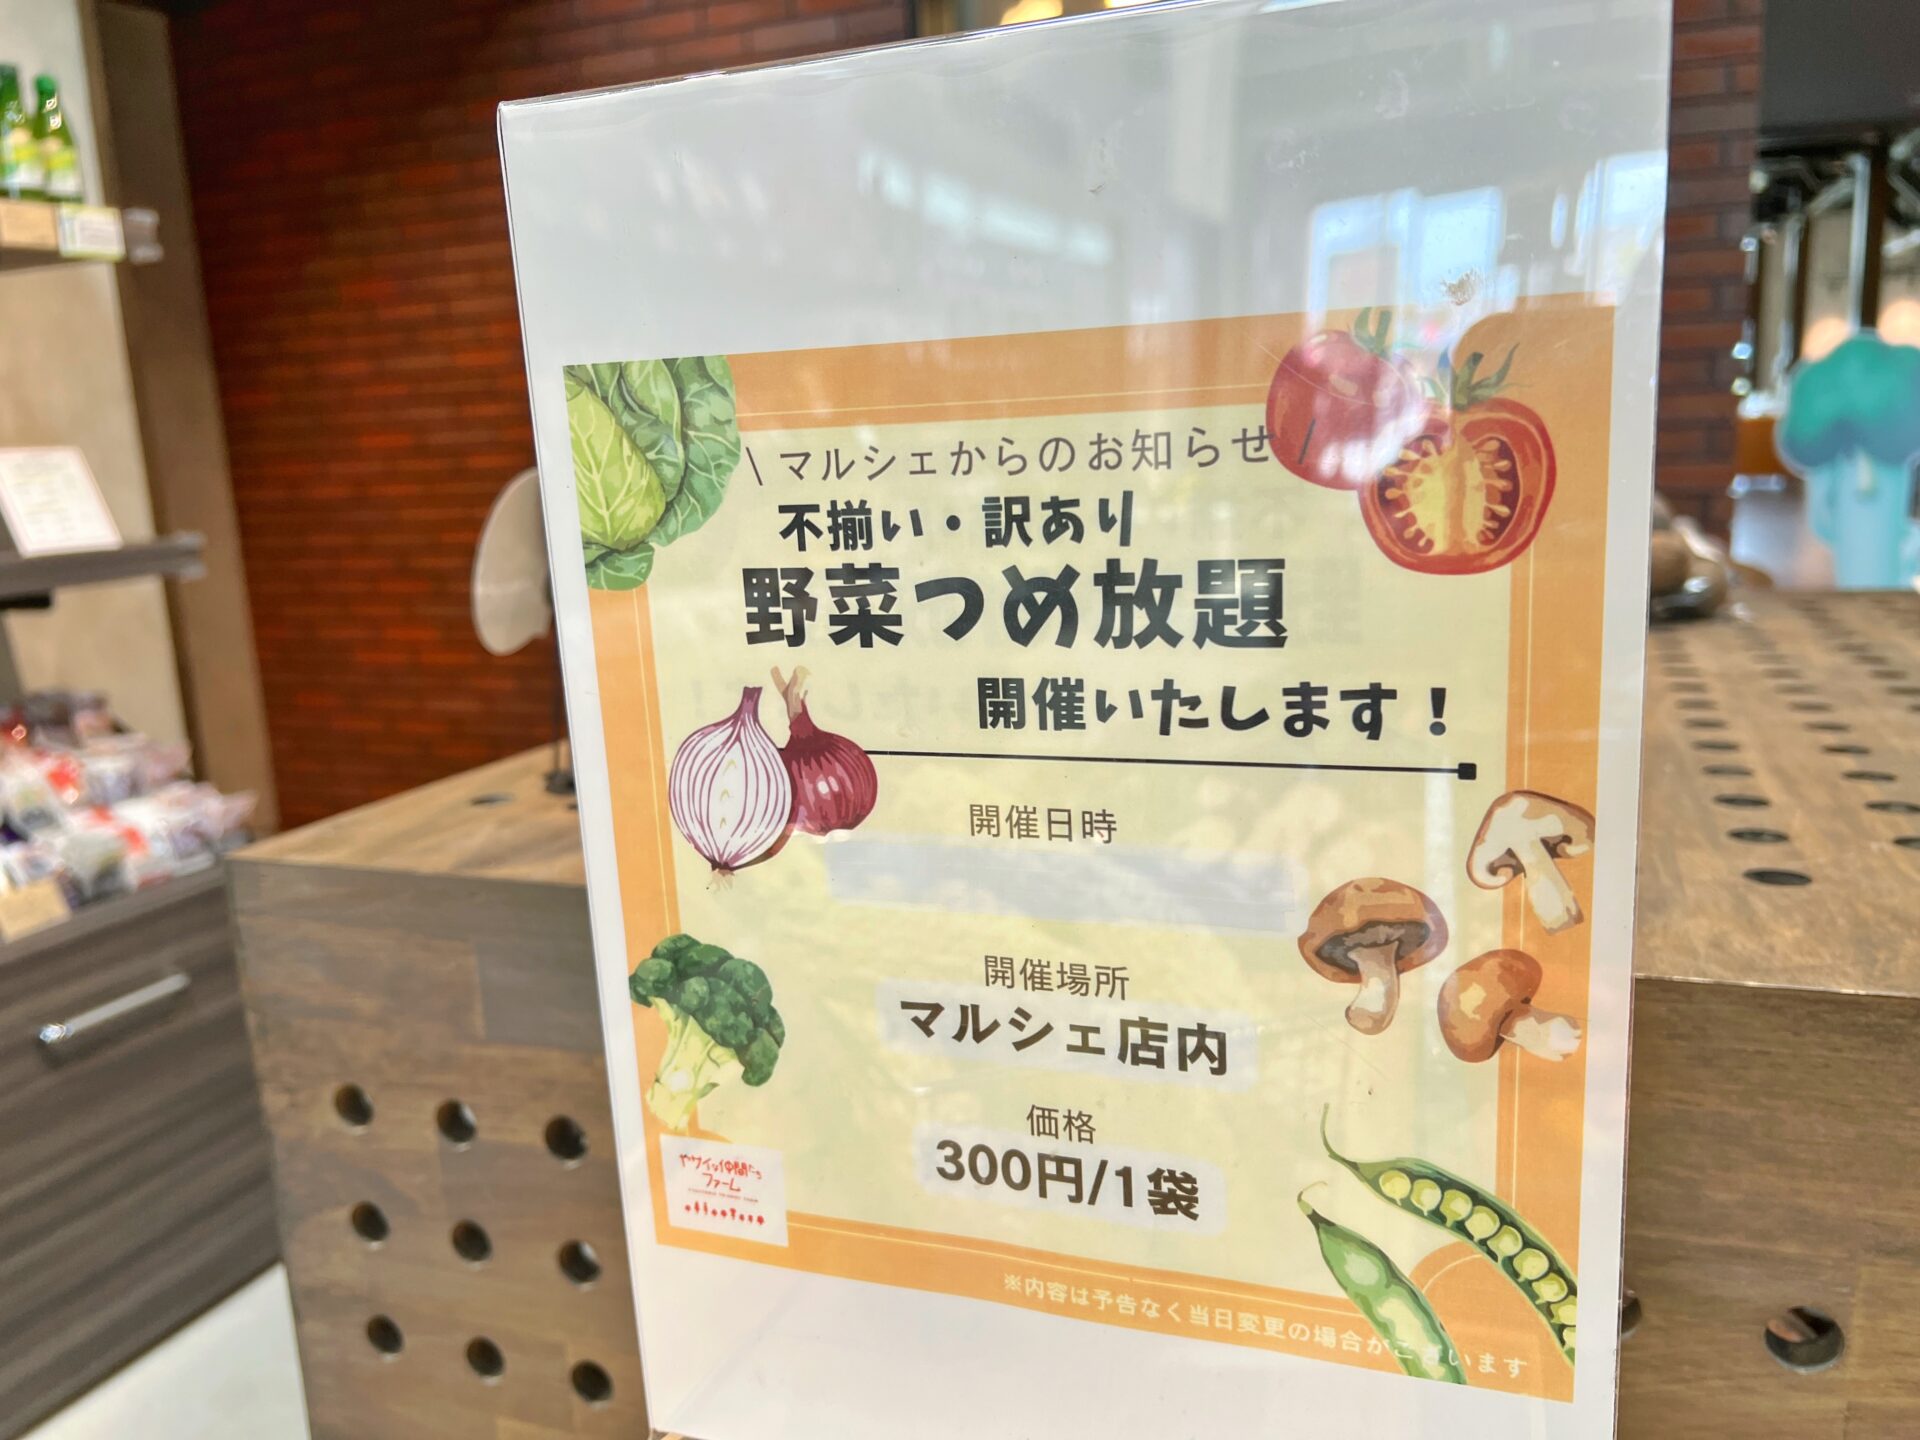 深谷市「ヤサイな仲間たちファーム」500円でできる野菜収穫体験！詰め放題も!?